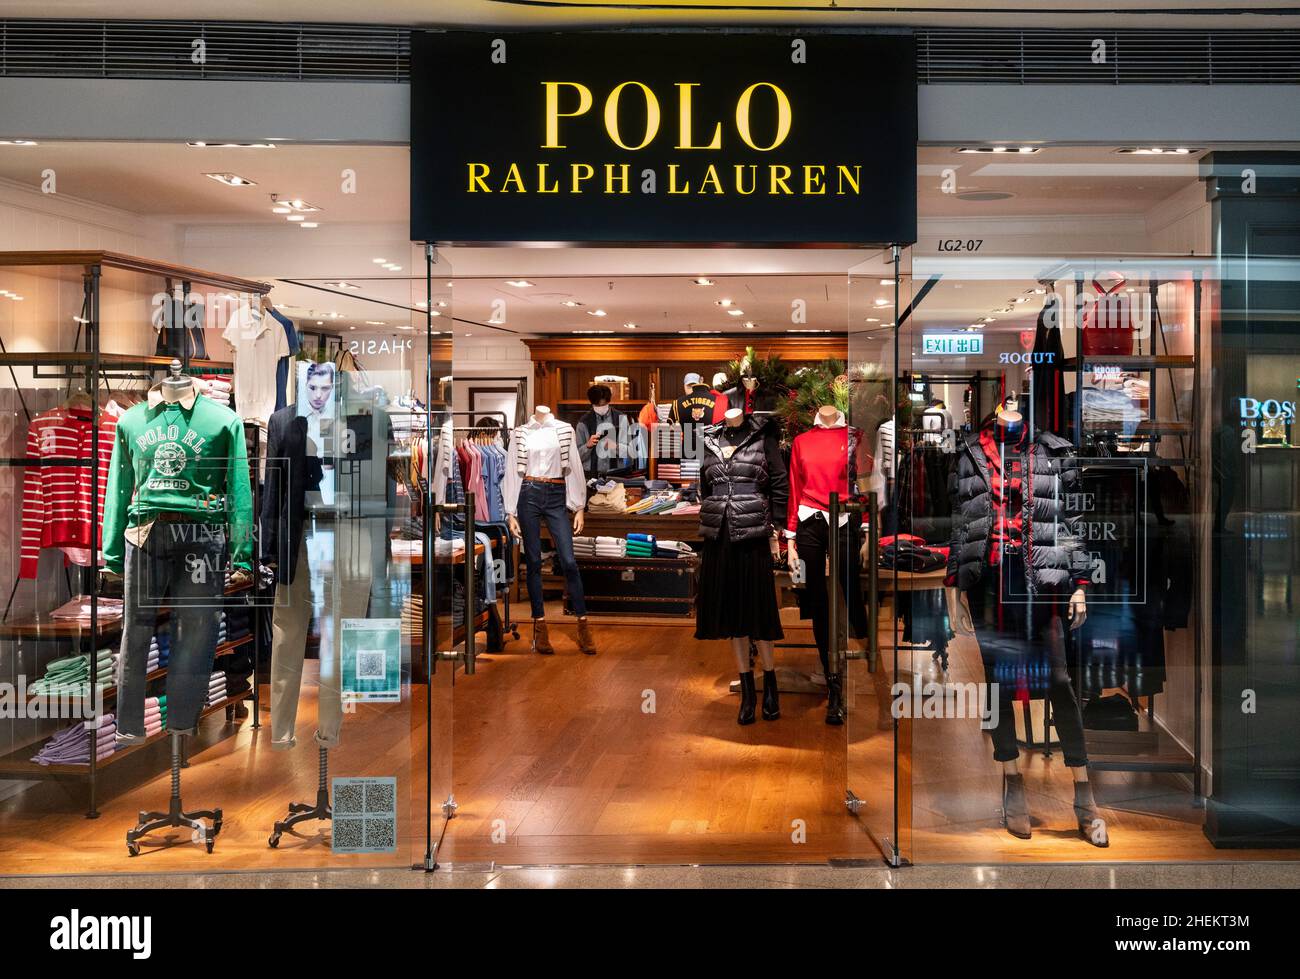 Polo Ralph Lauren, marque de mode américaine, vu à Hong Kong Photo Stock -  Alamy